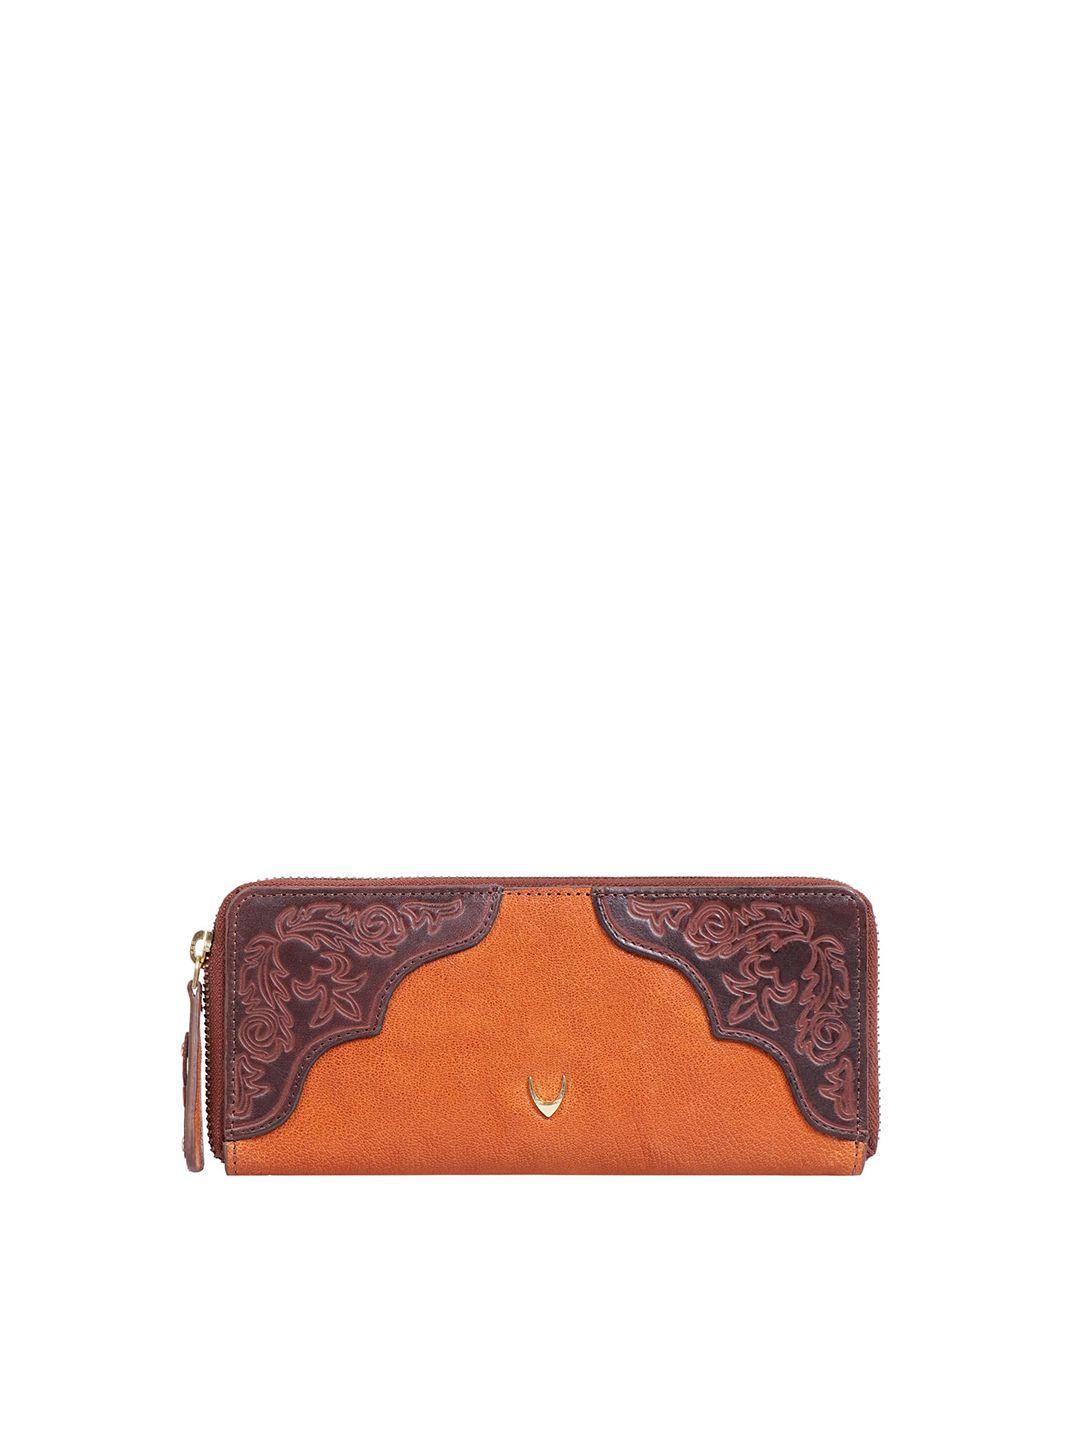 hidesign women orange & brown textured purse clutch